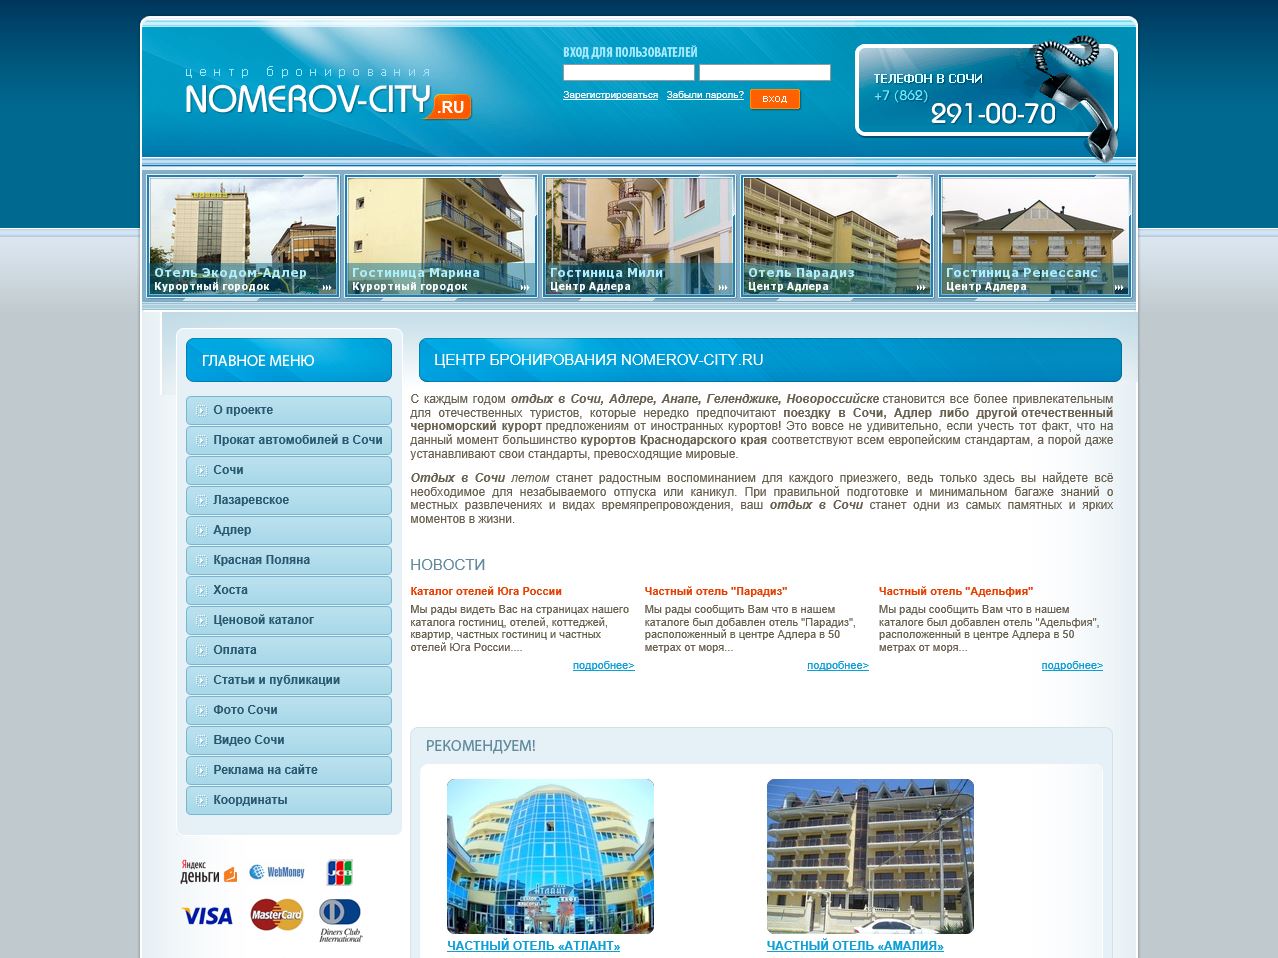   Nomerov-City